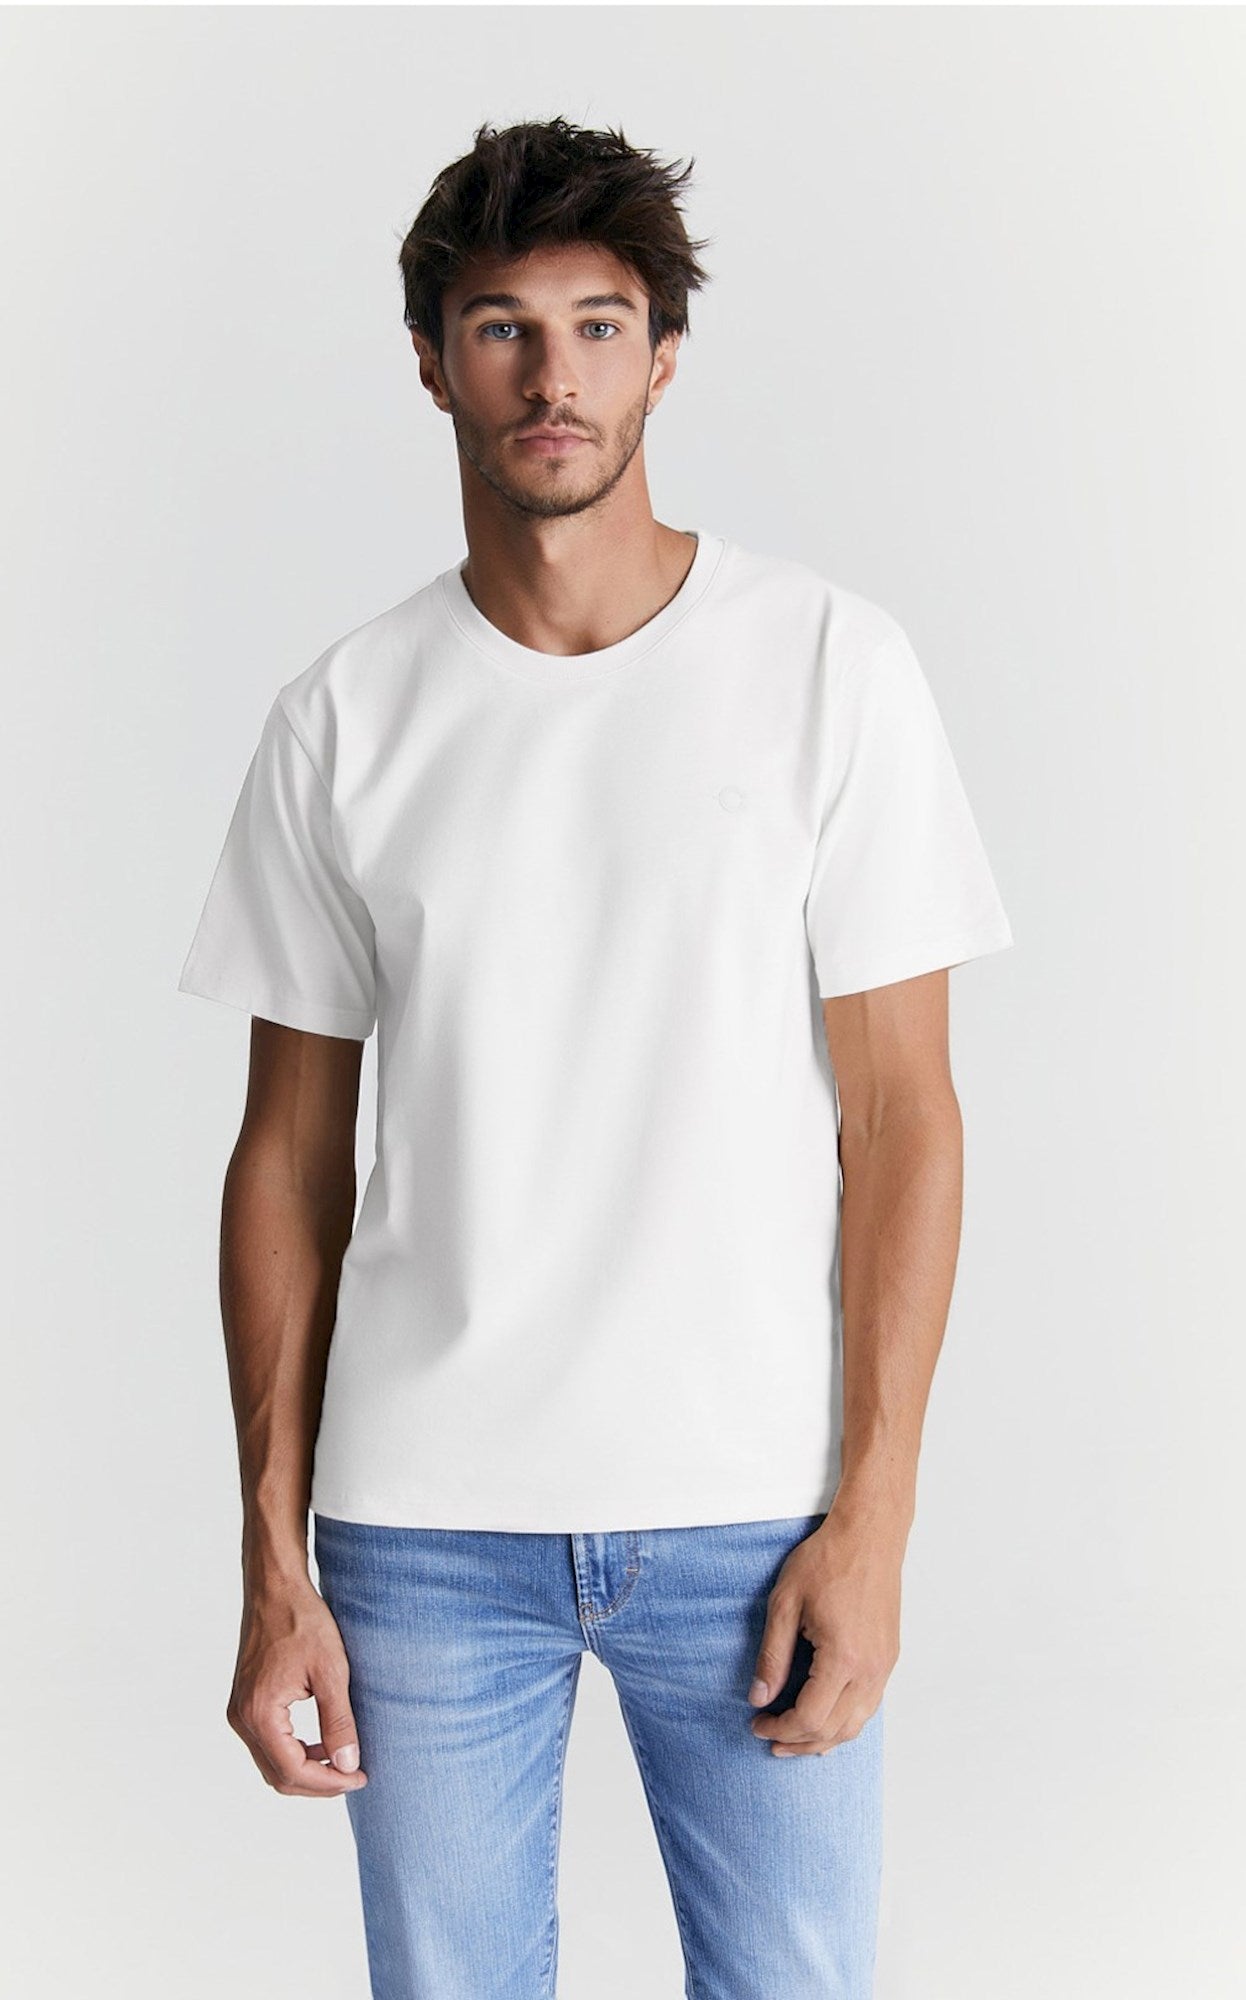 Fin - T-Shirt - Weiß